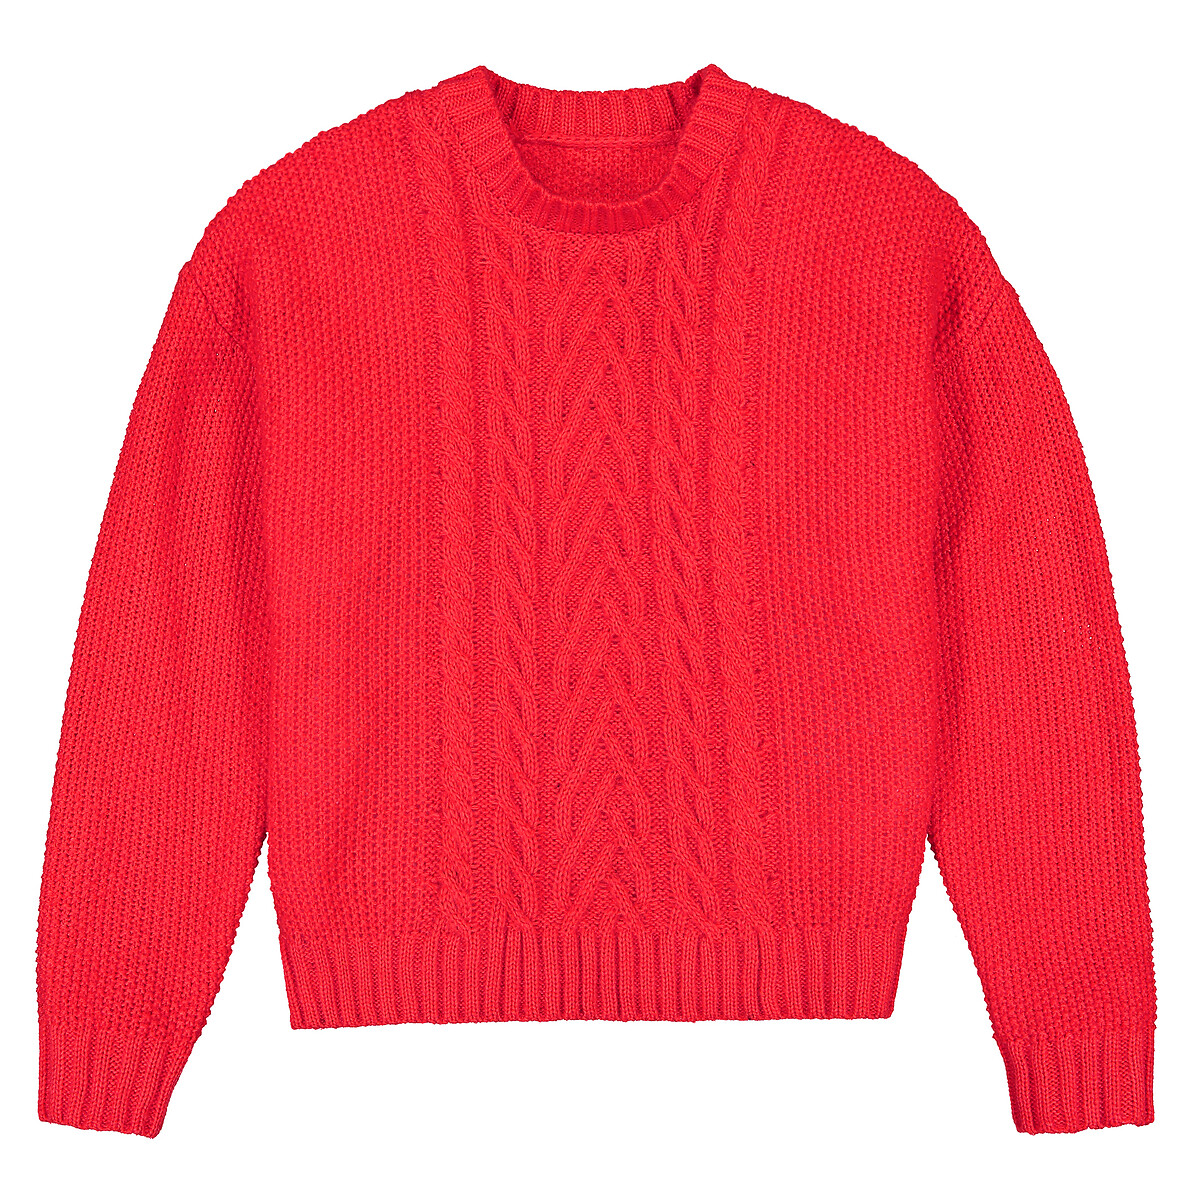 Пуловер LaRedoute С круглым вырезом из плотного трикотажа 10-18 лет 10 лет - 138 см красный, размер 10 лет - 138 см - фото 3